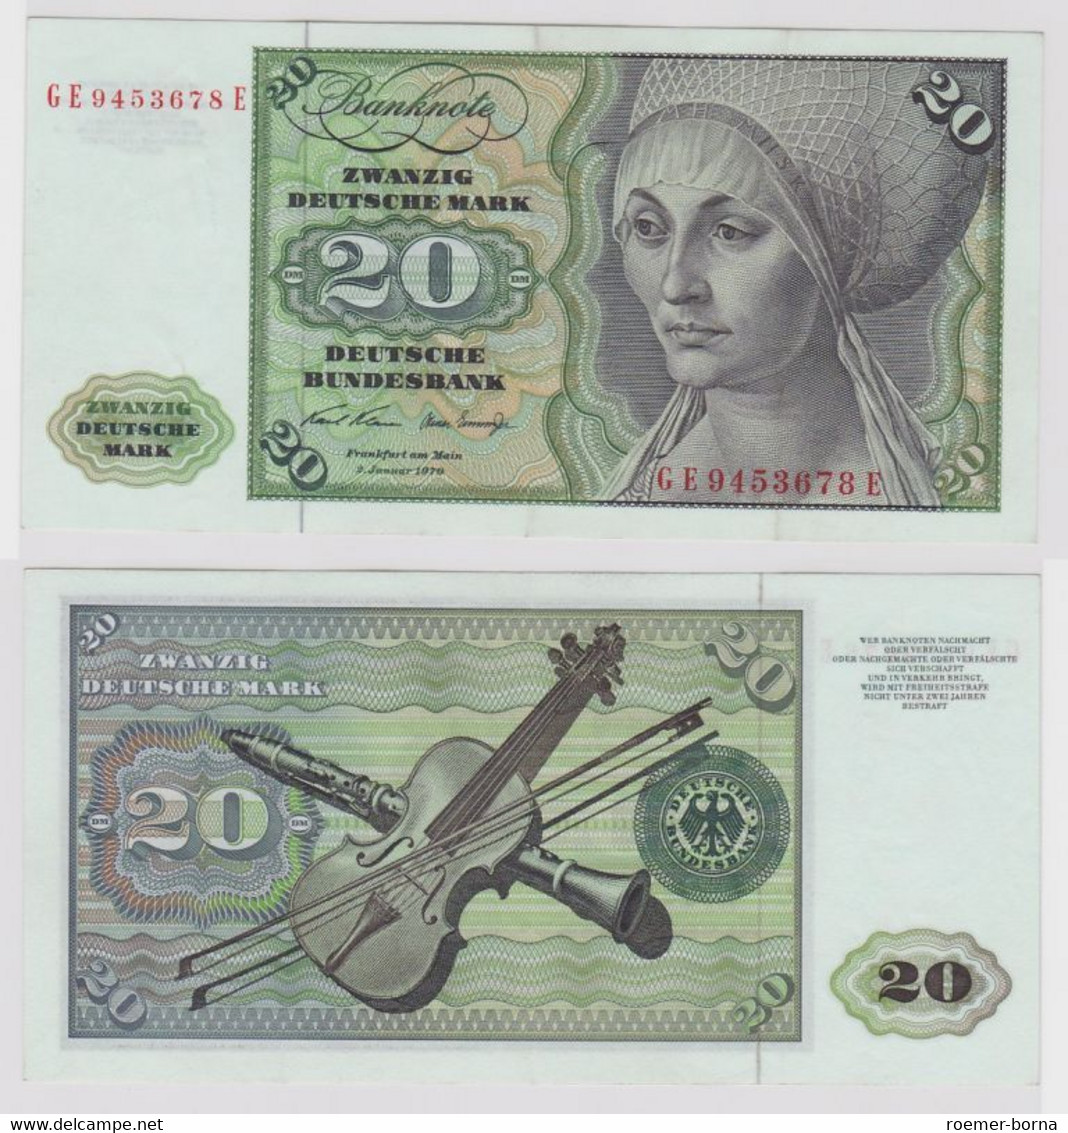 T148661 Banknote 20 DM Deutsche Mark Ro. 271b Schein 2.Jan. 1970 KN GE 9453678 E - 20 DM